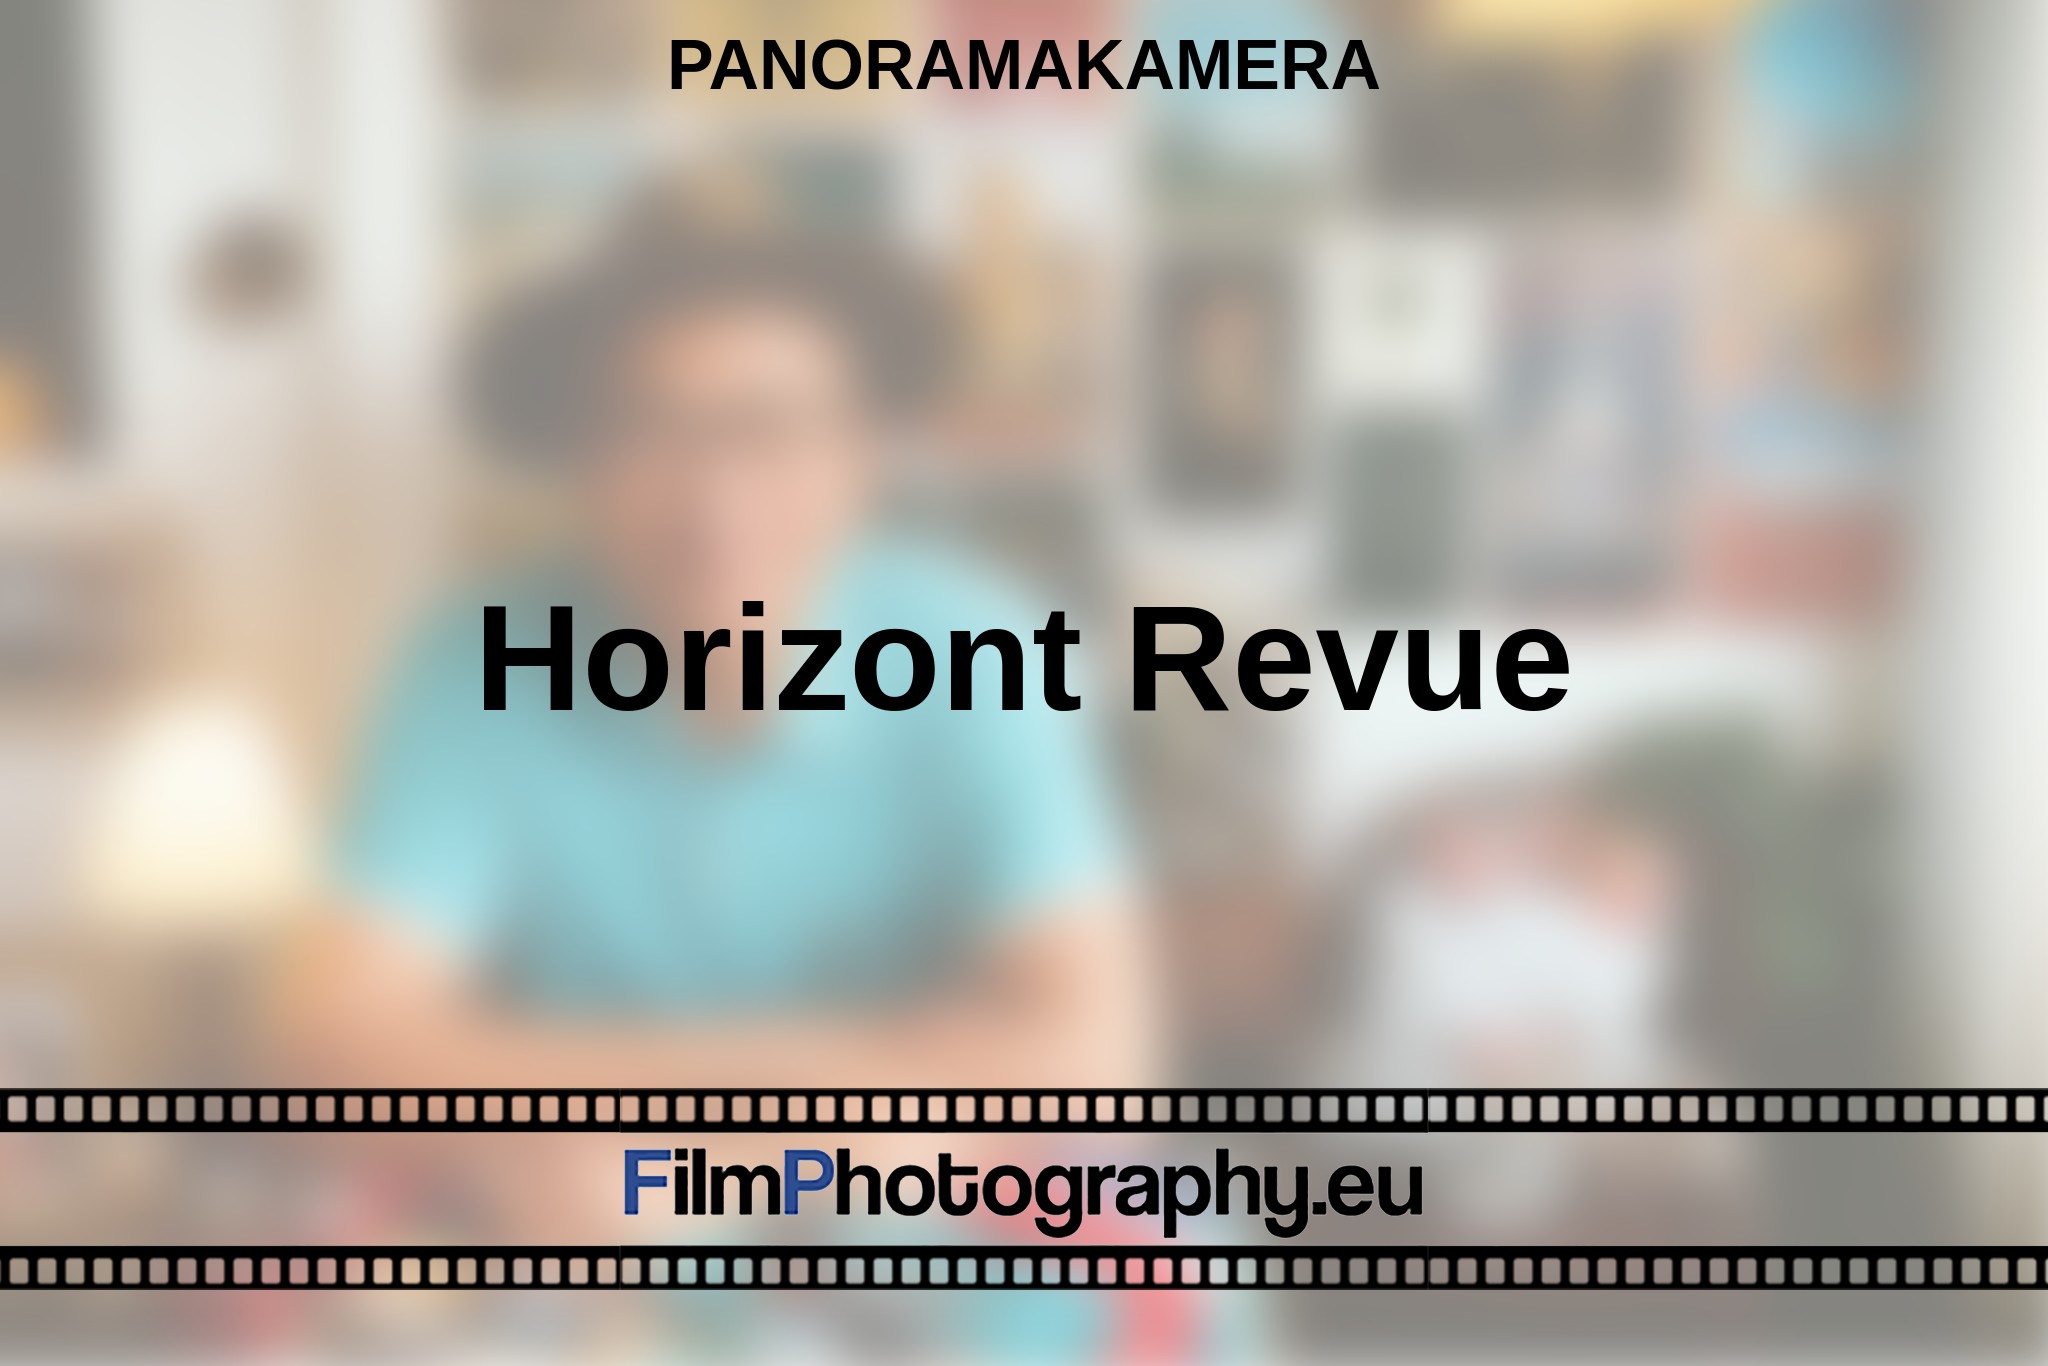 horizont-revue-panoramakamera-bnv.jpg